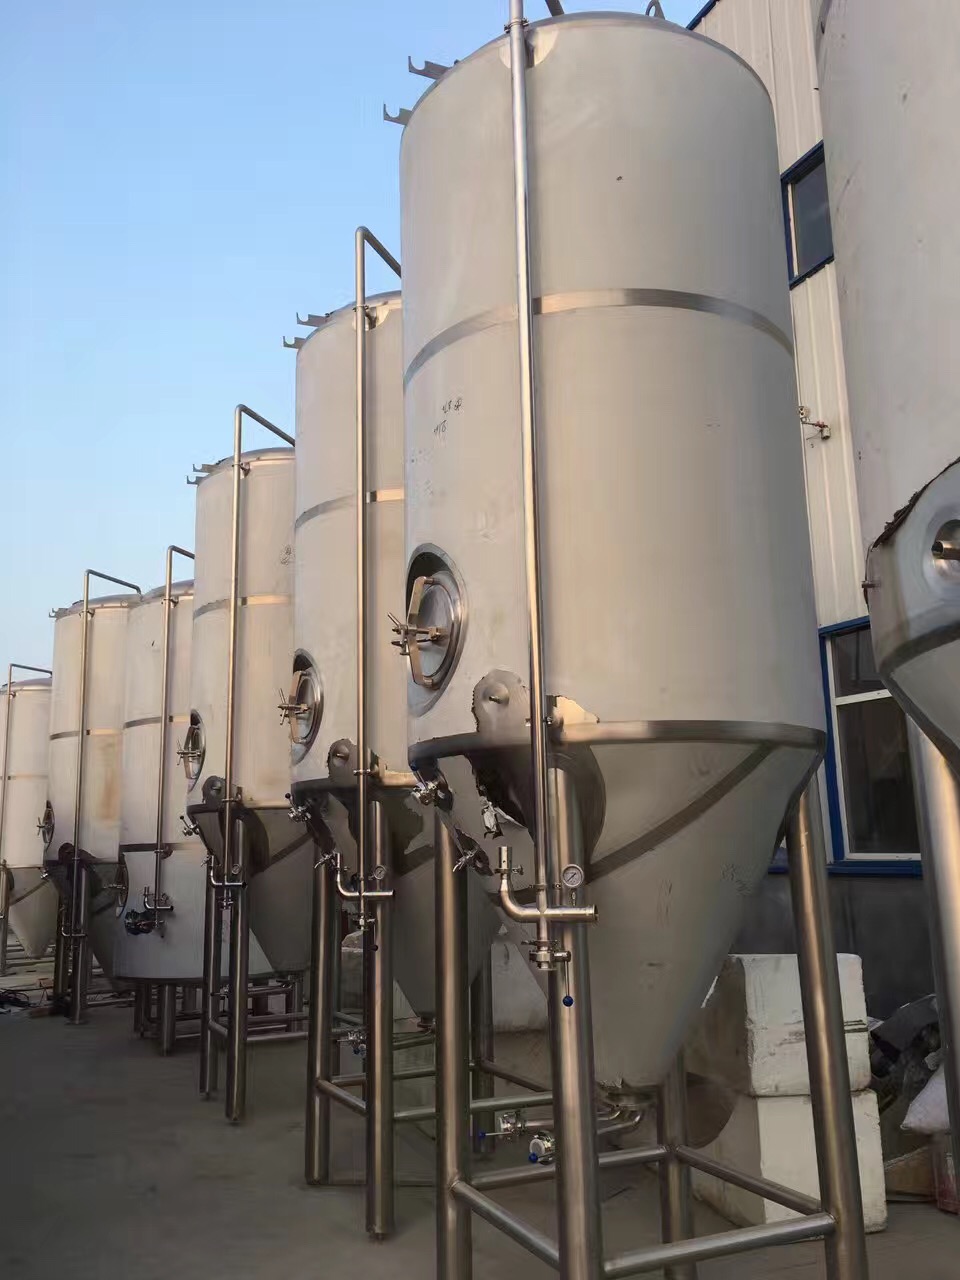 啤酒酿造设备生产厂家 糖化罐 发酵罐 免费培训技术 包教会